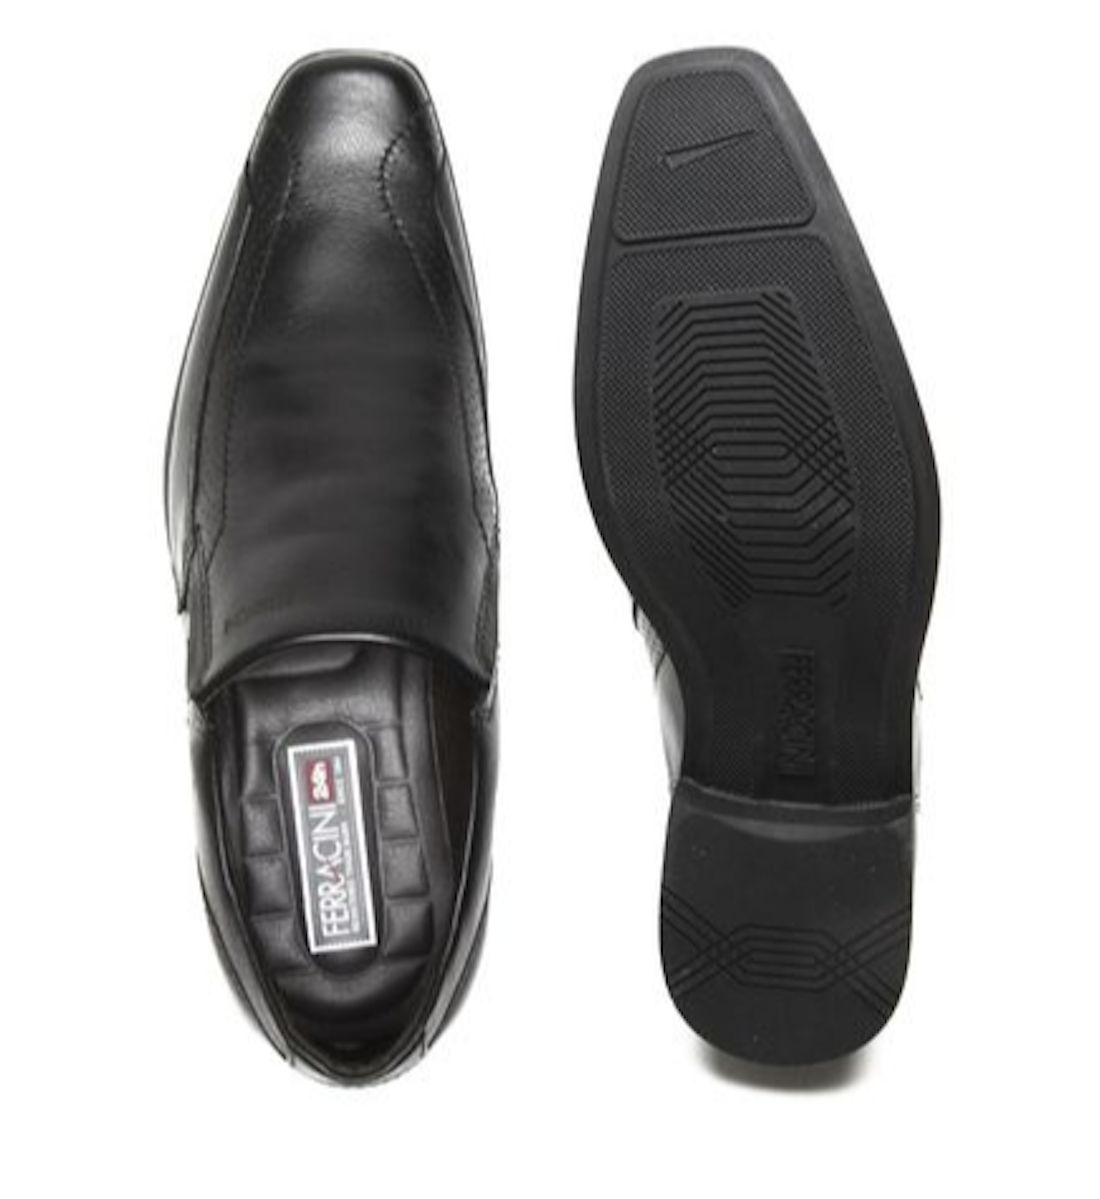 Sapato masculino de couro Chile Ferracini 5063